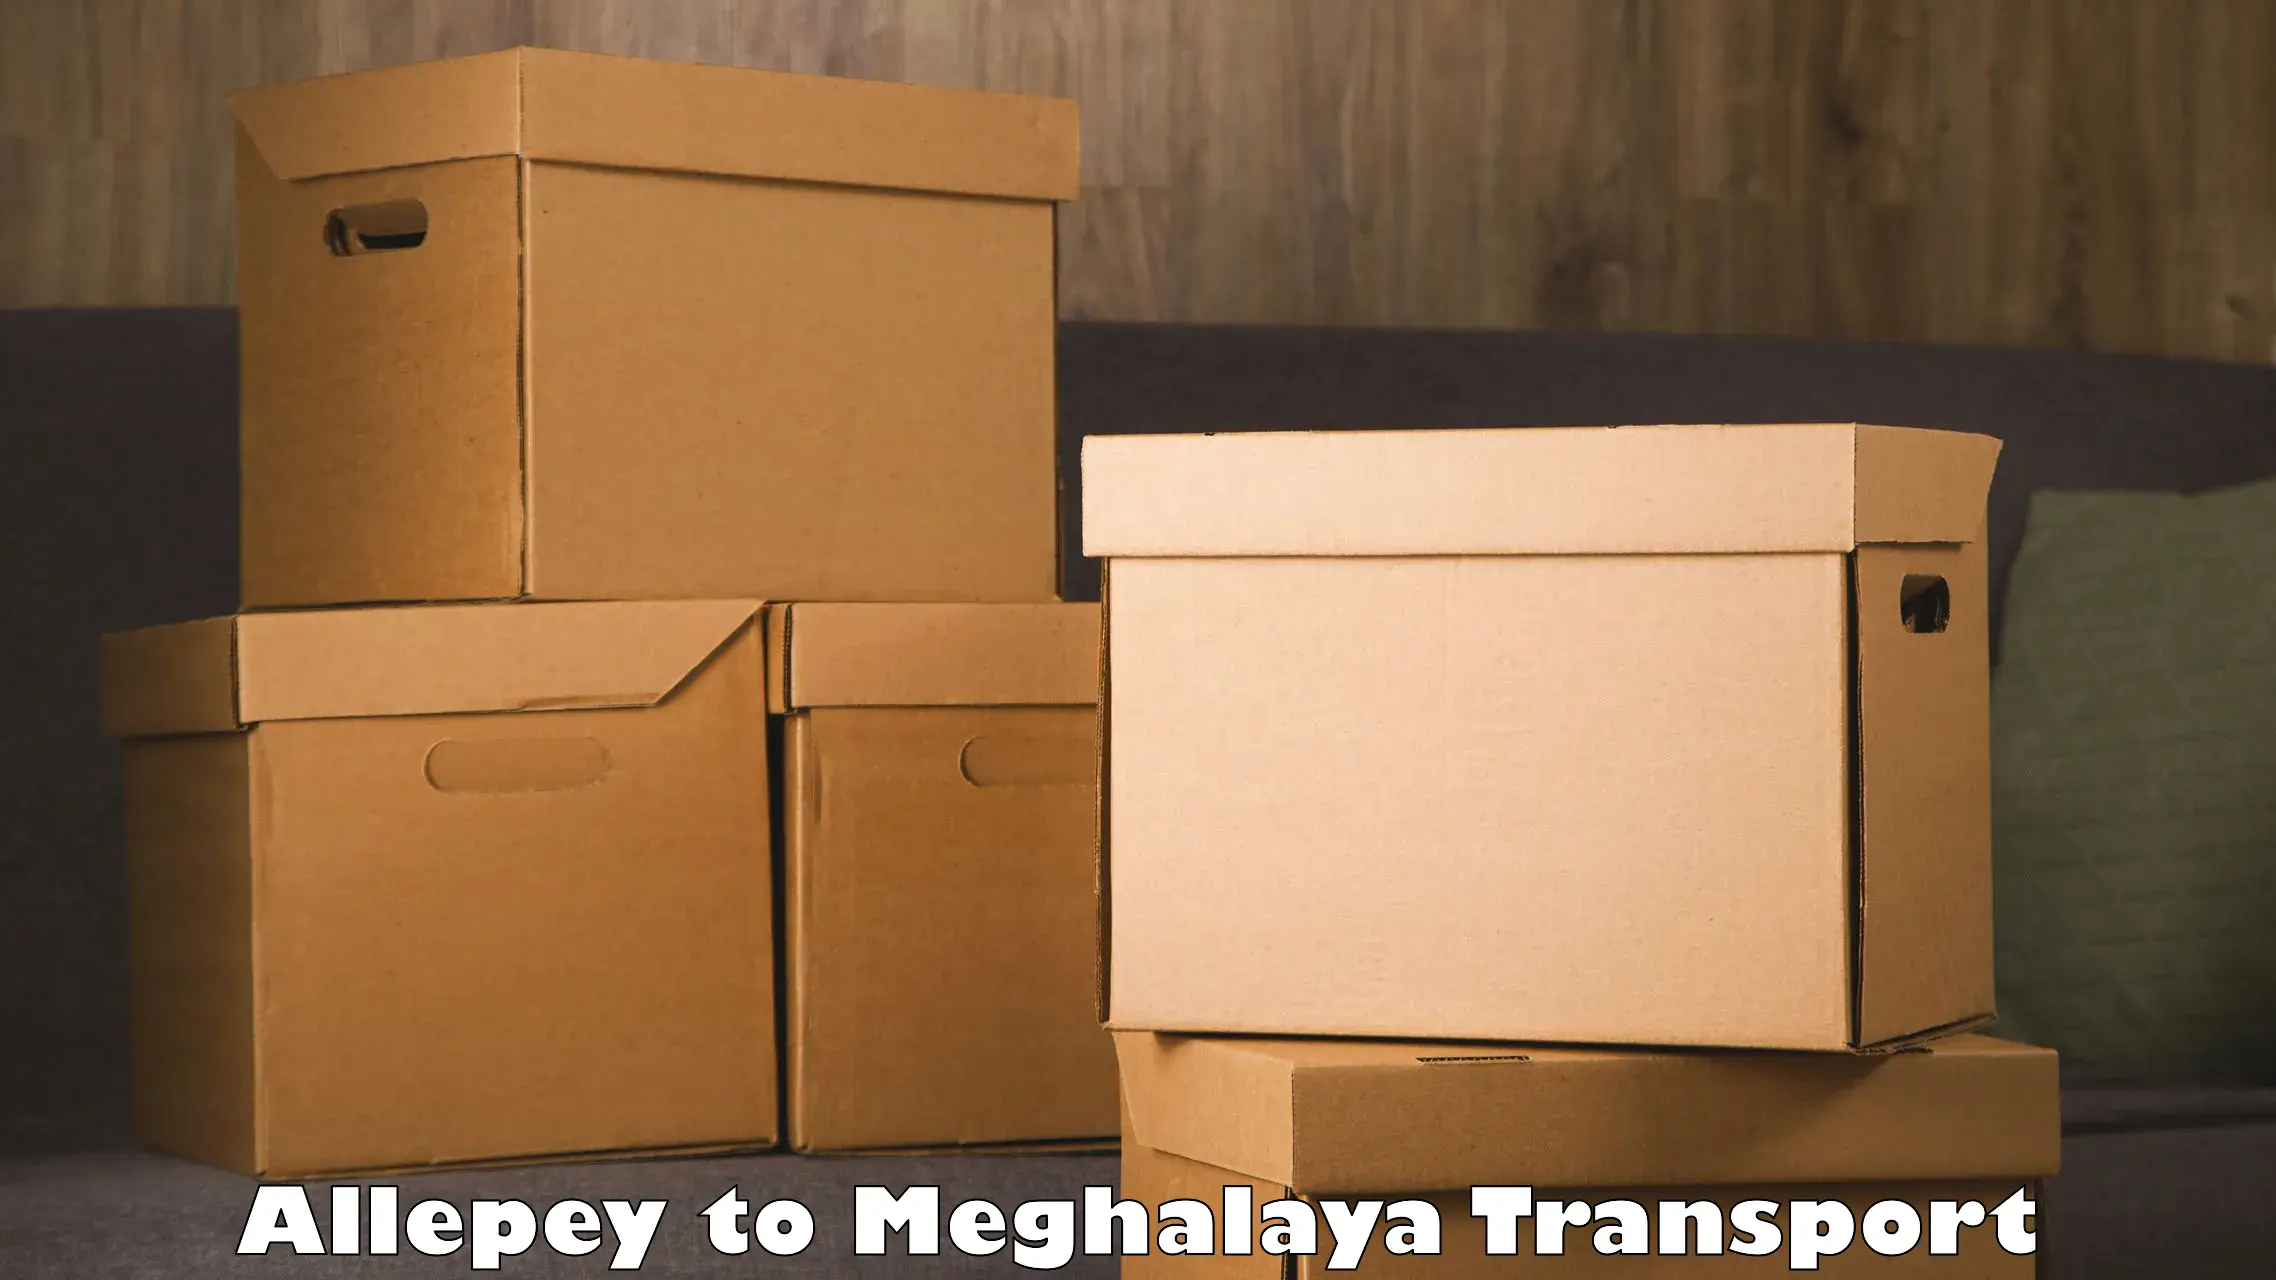 Bike transport service Allepey to Meghalaya